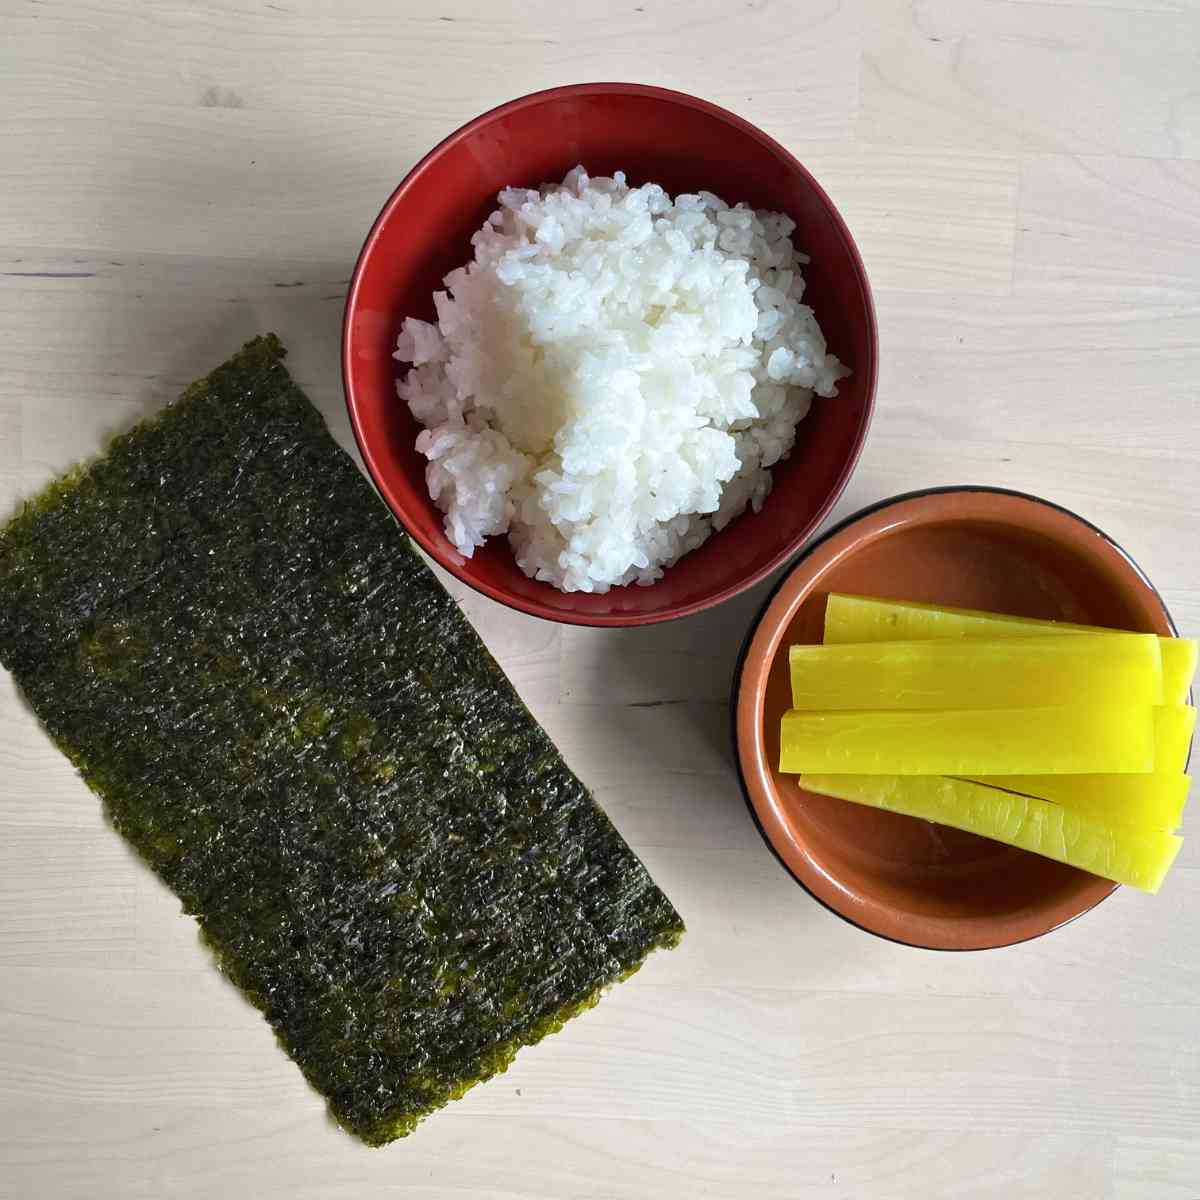 Oshinko roll ingredients